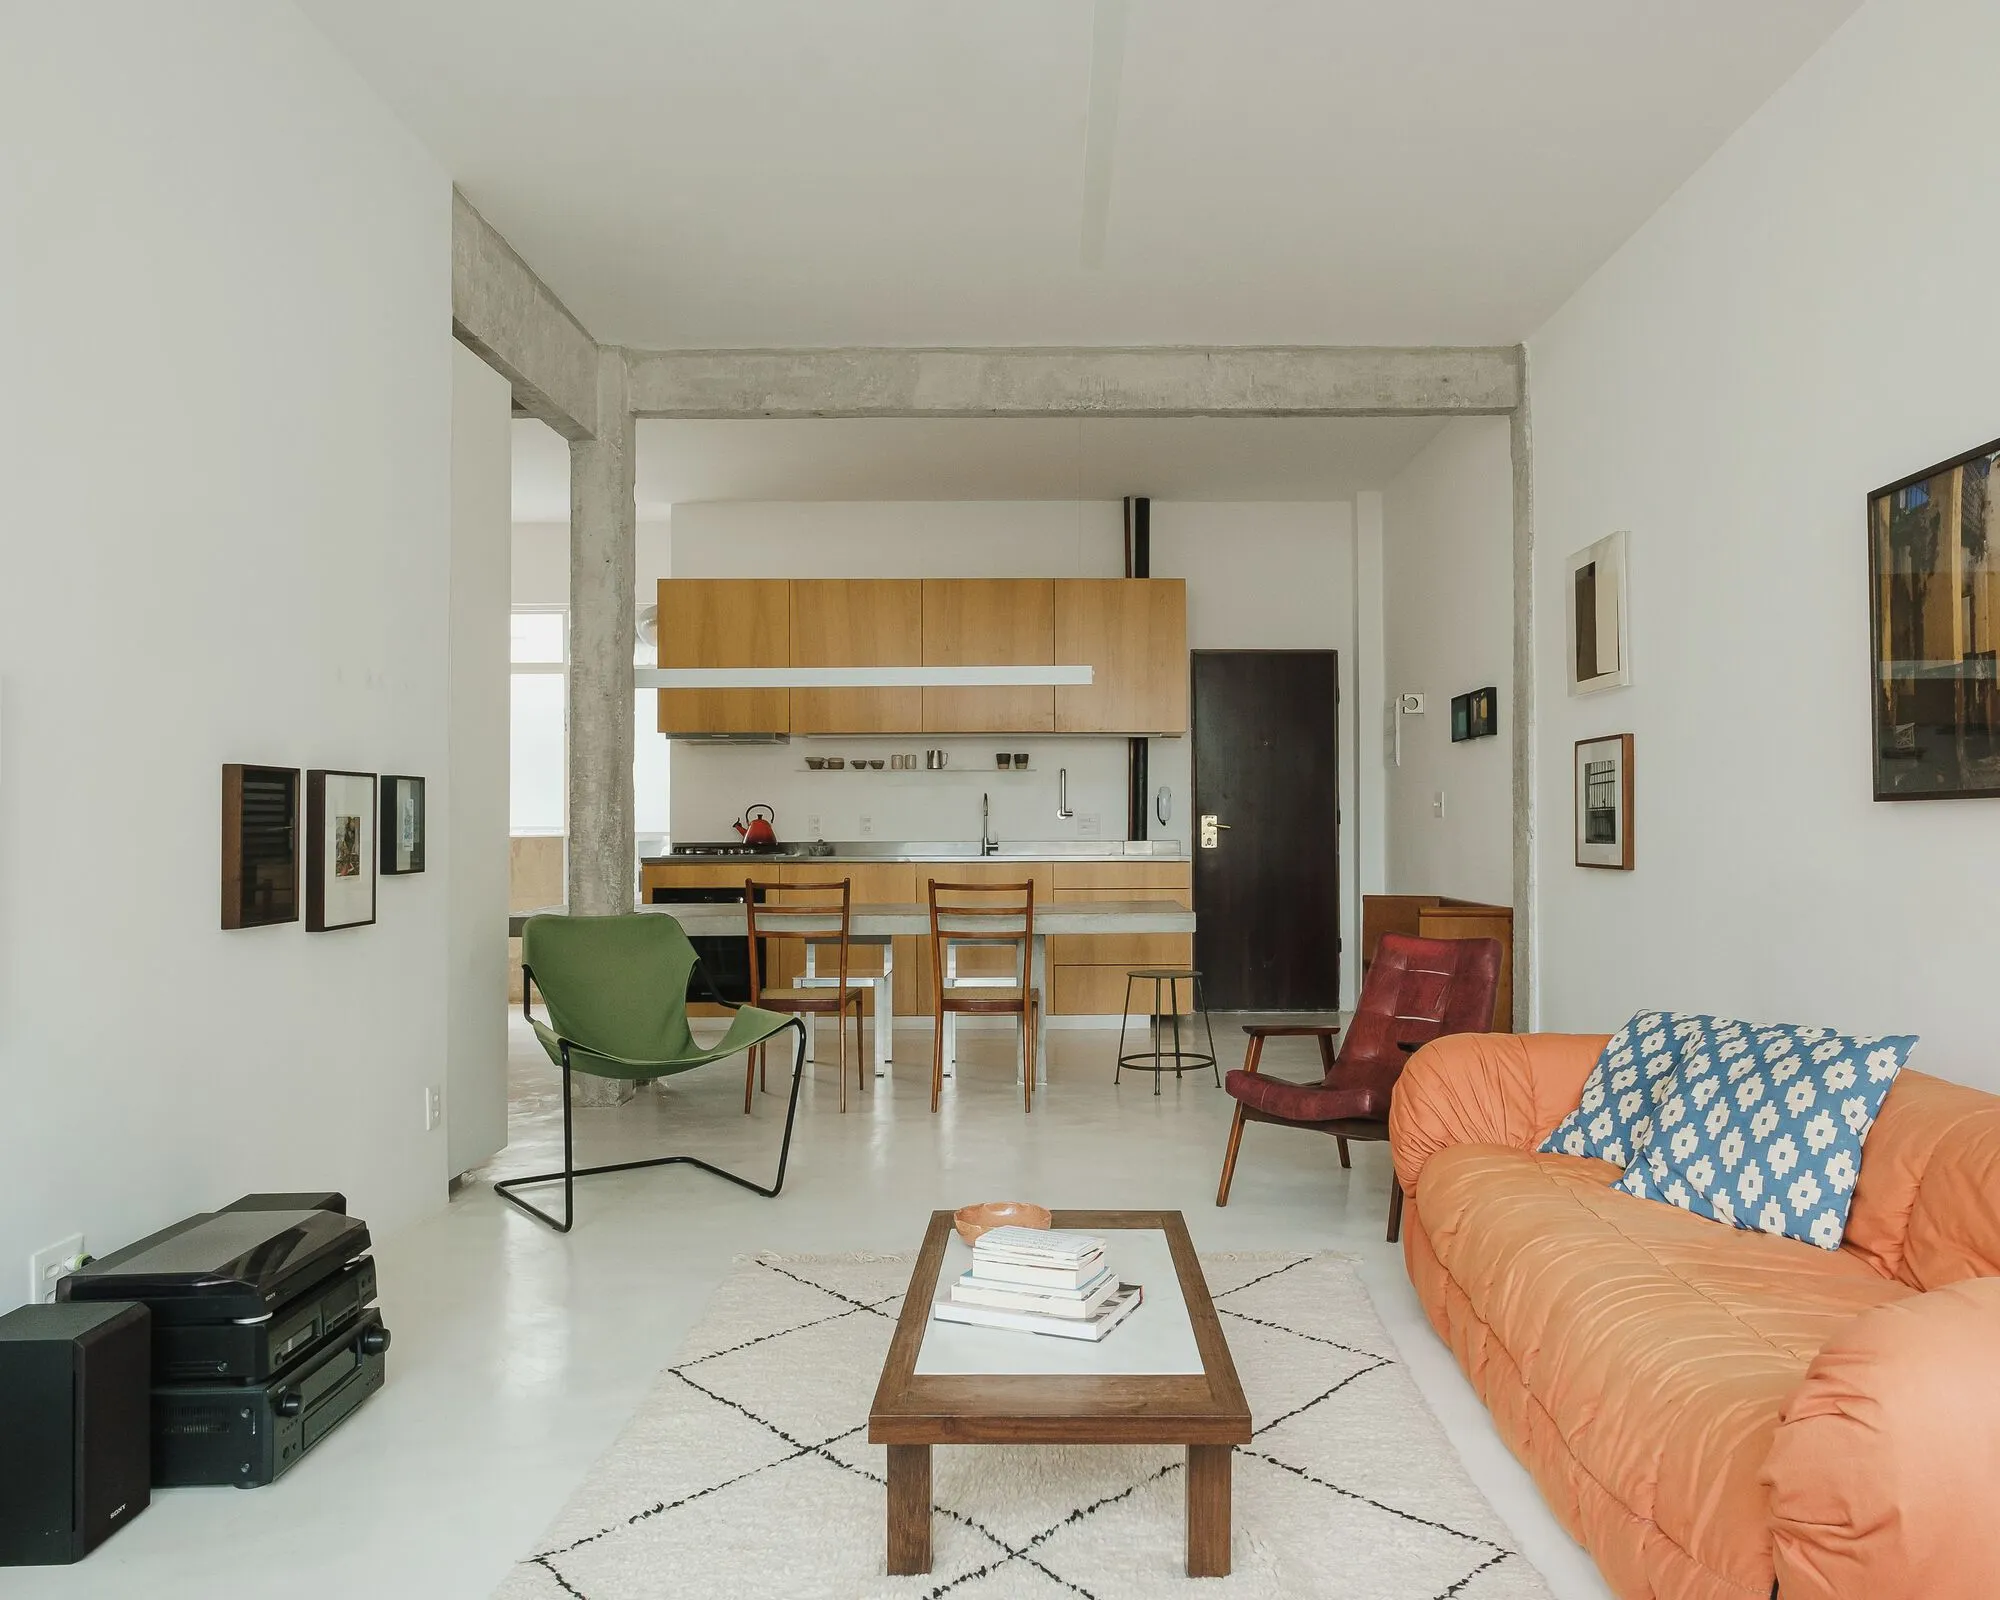 图片[1]|Aureliano Coutinho 公寓改造 / JPG.ARQ|ART-Arrakis | 建筑室内设计的创新与灵感